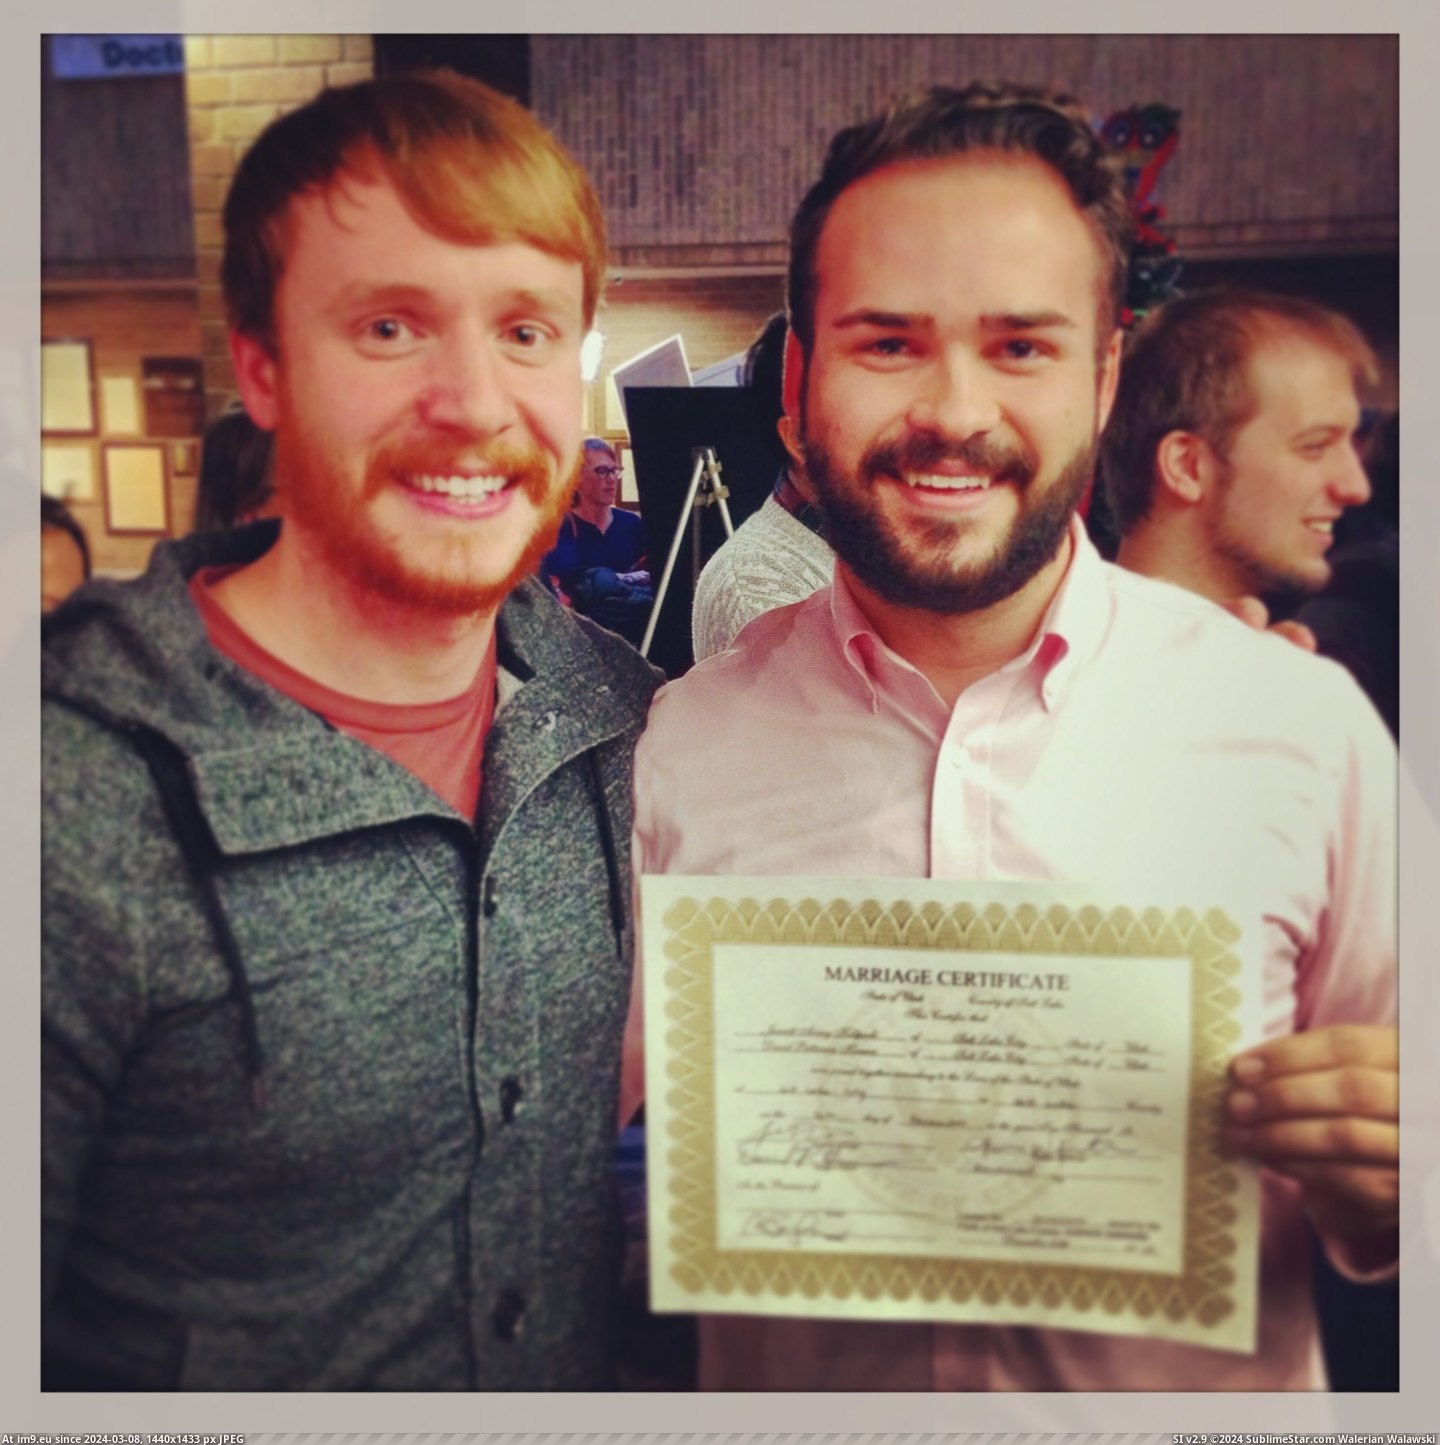 #Gay #All #Married #Got #Utah [Pics] Just got gay married in Utah y'all! Pic. (Image of album ))